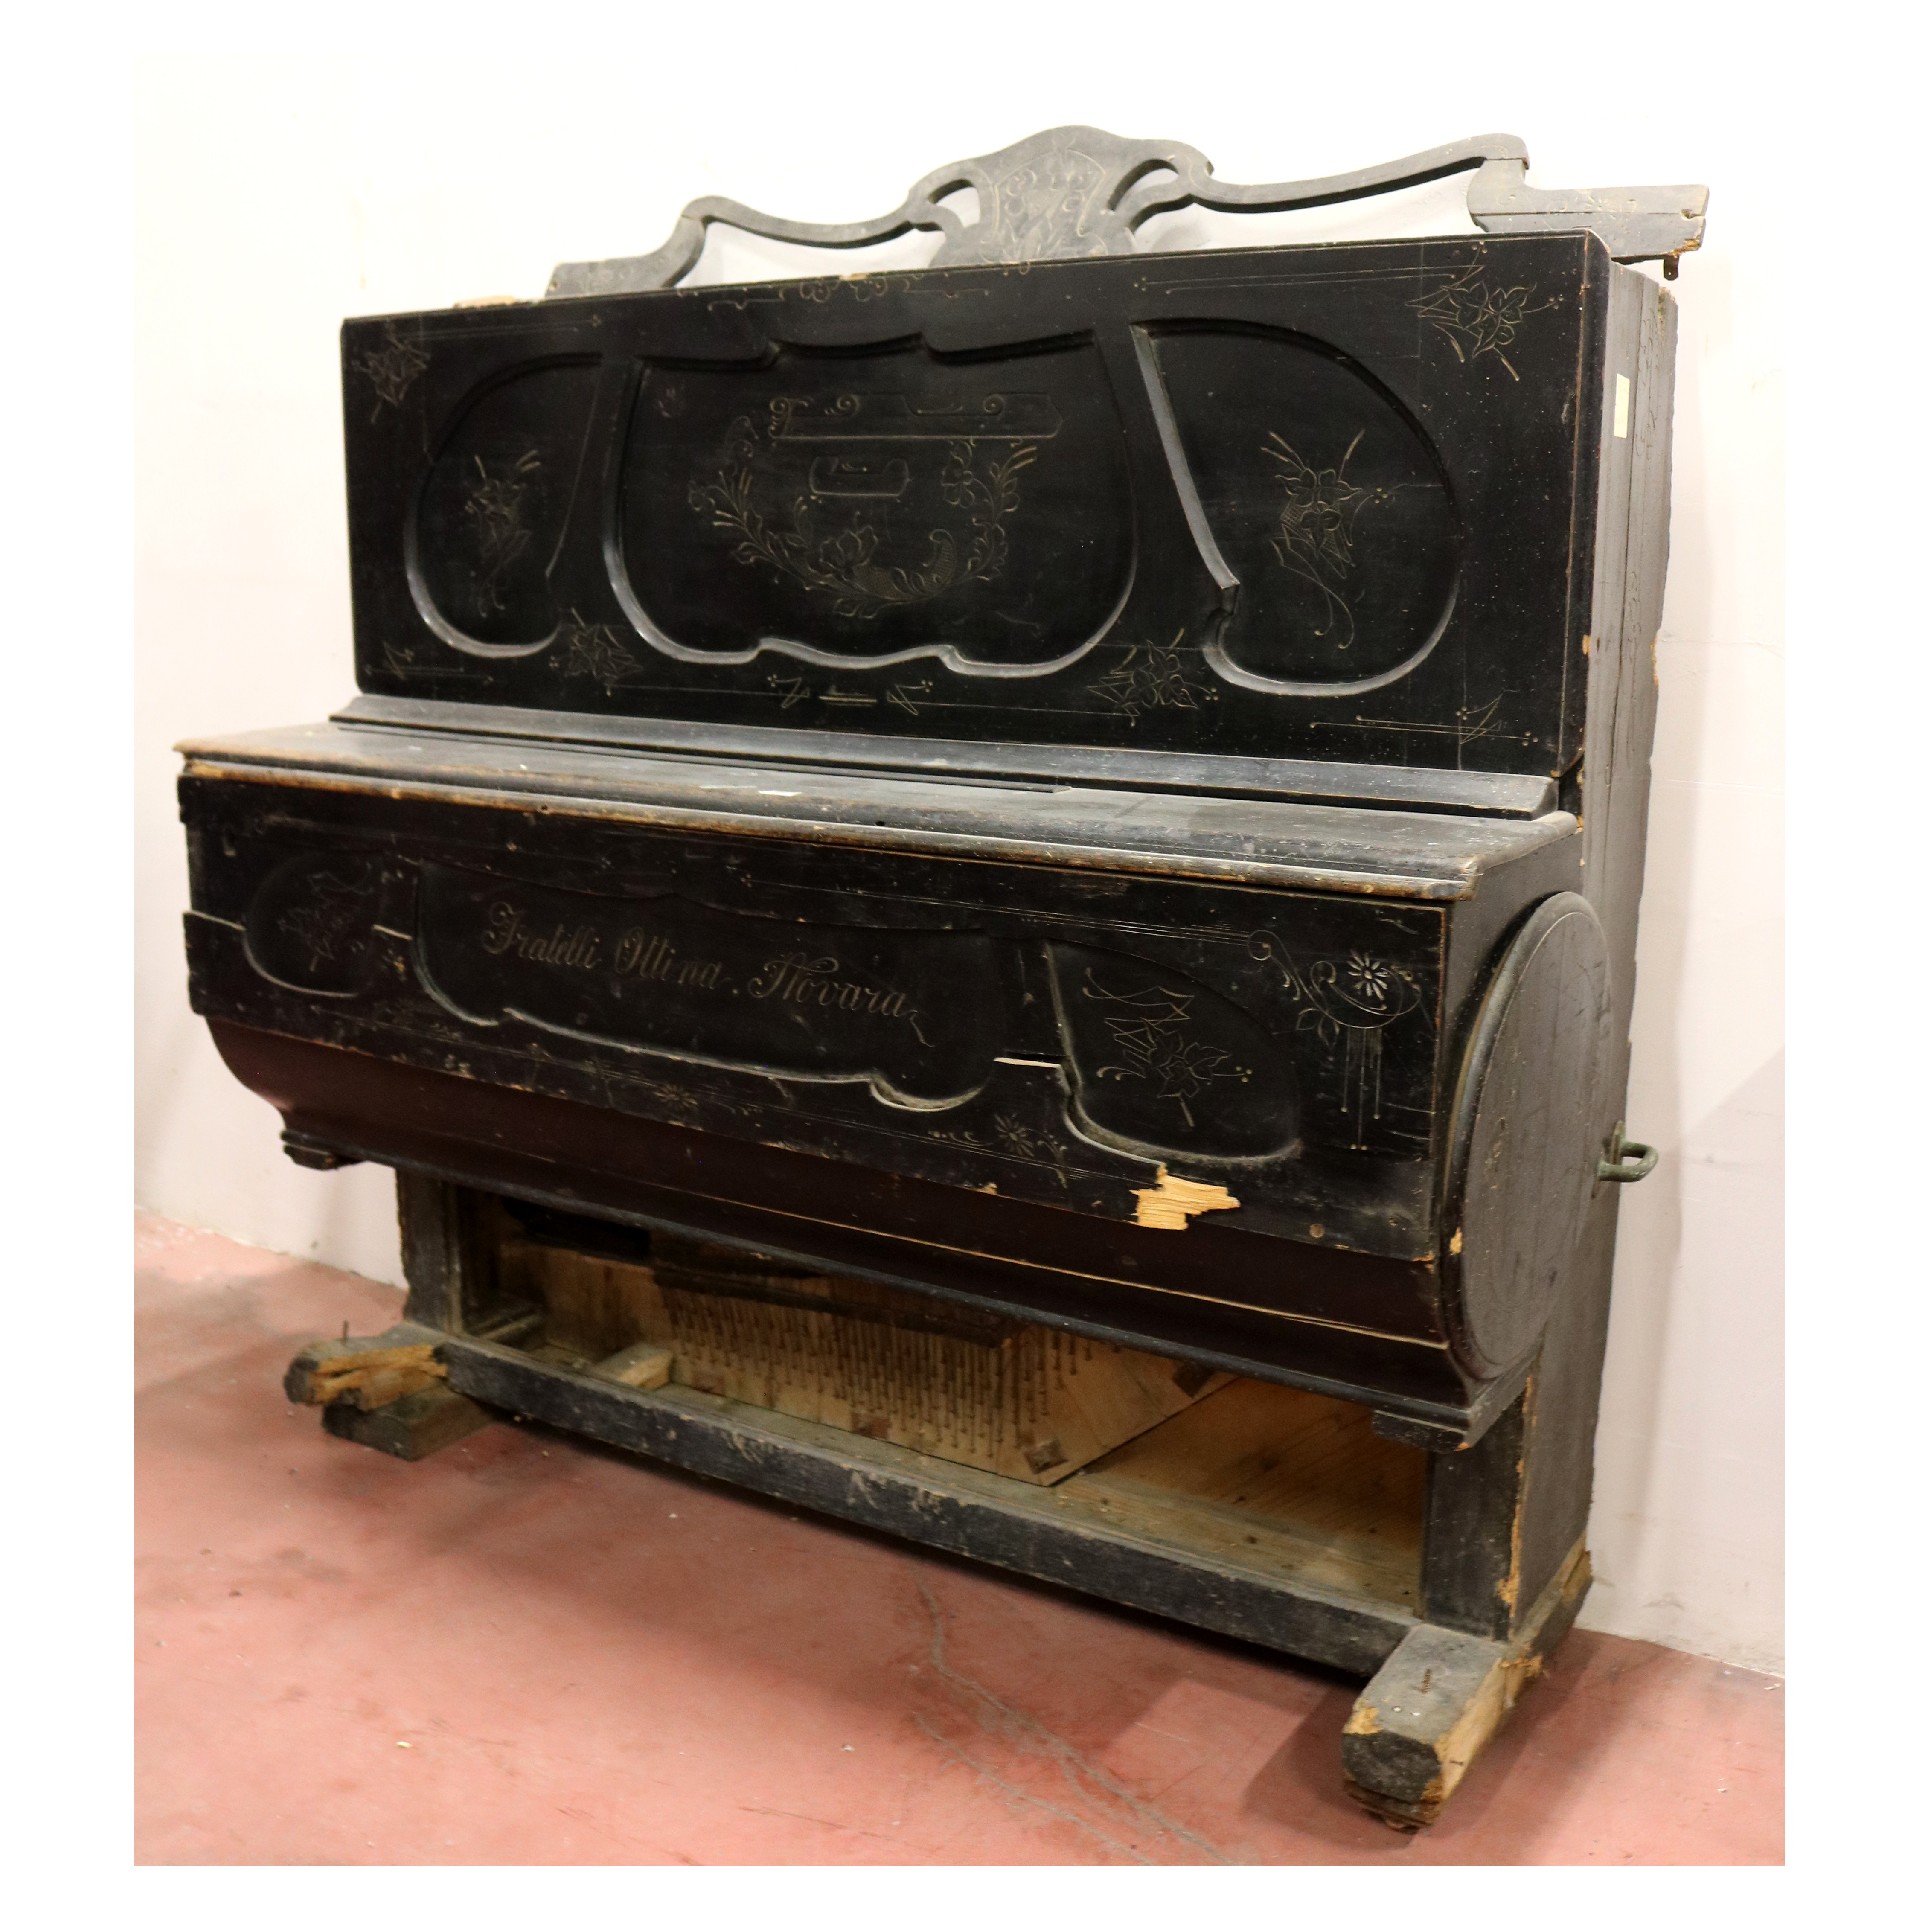 Antico pianoforte in legno - Strumenti musicali - Mobili antichi - Prodotti - Antichità Fiorillo